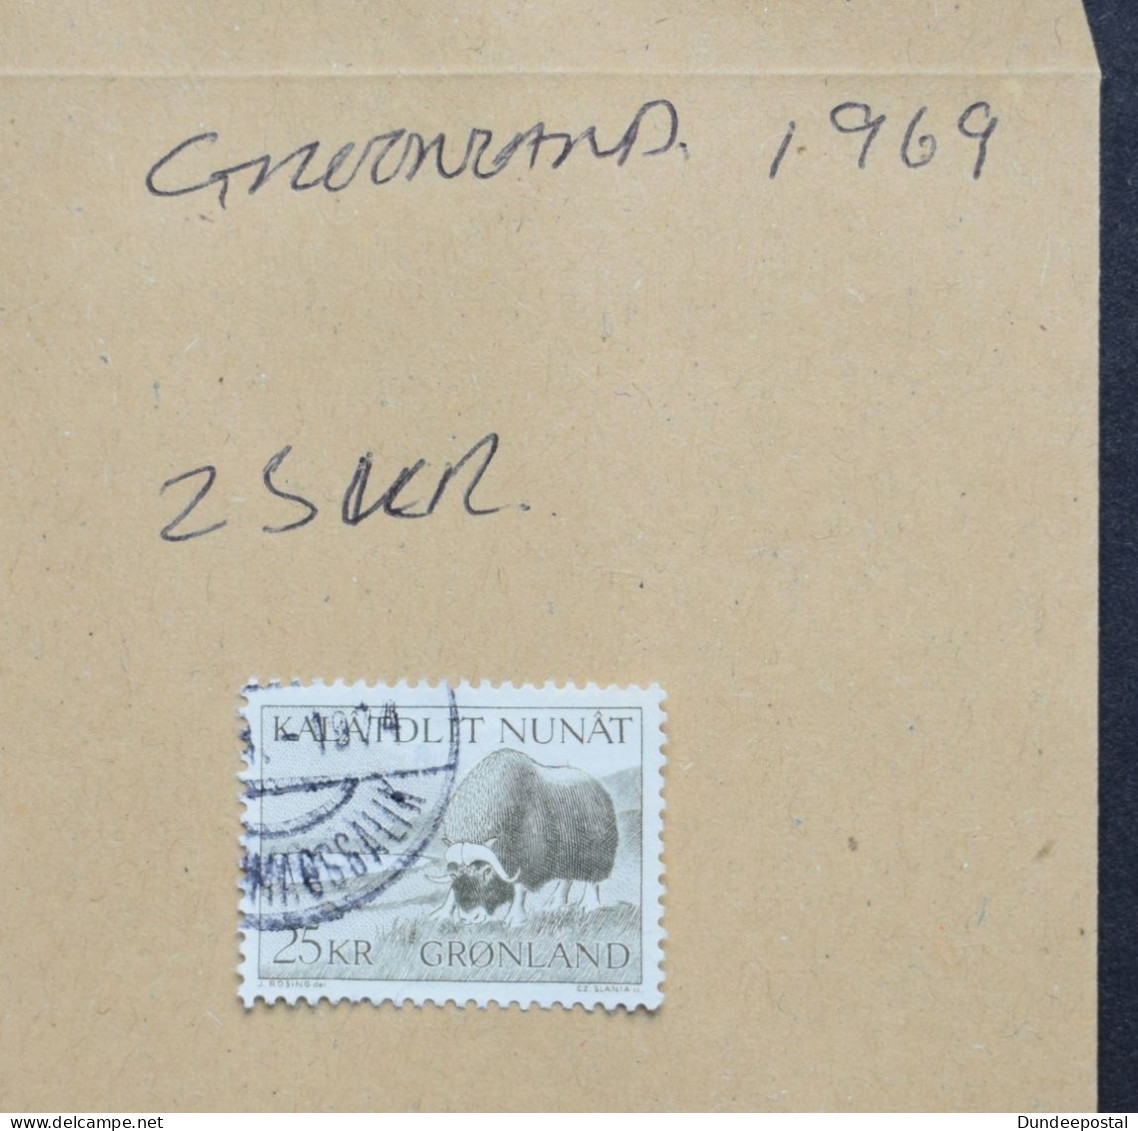 GREENLAND GRONLAND  STAMPS 25Kr  1969  ~~L@@K~~ - Oblitérés